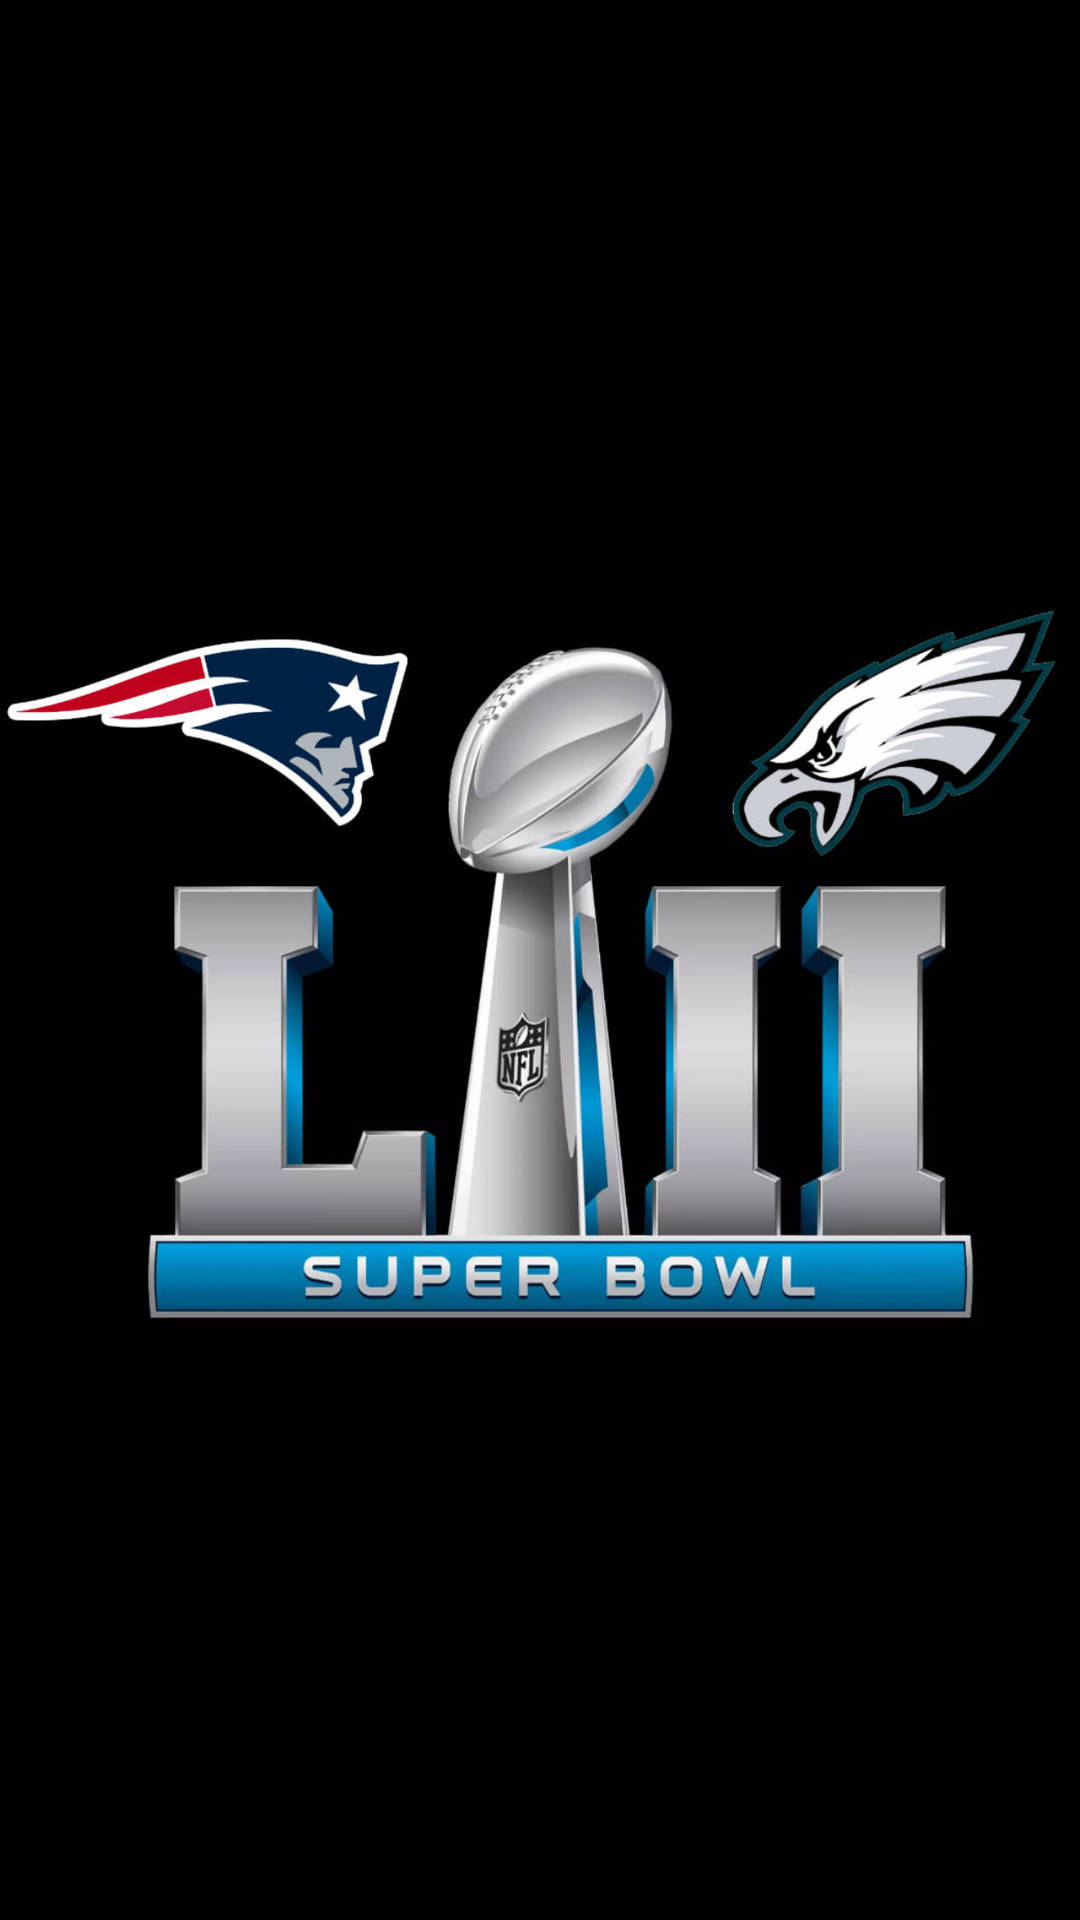 Super Bowl 2017 Patriots Vs Eagles